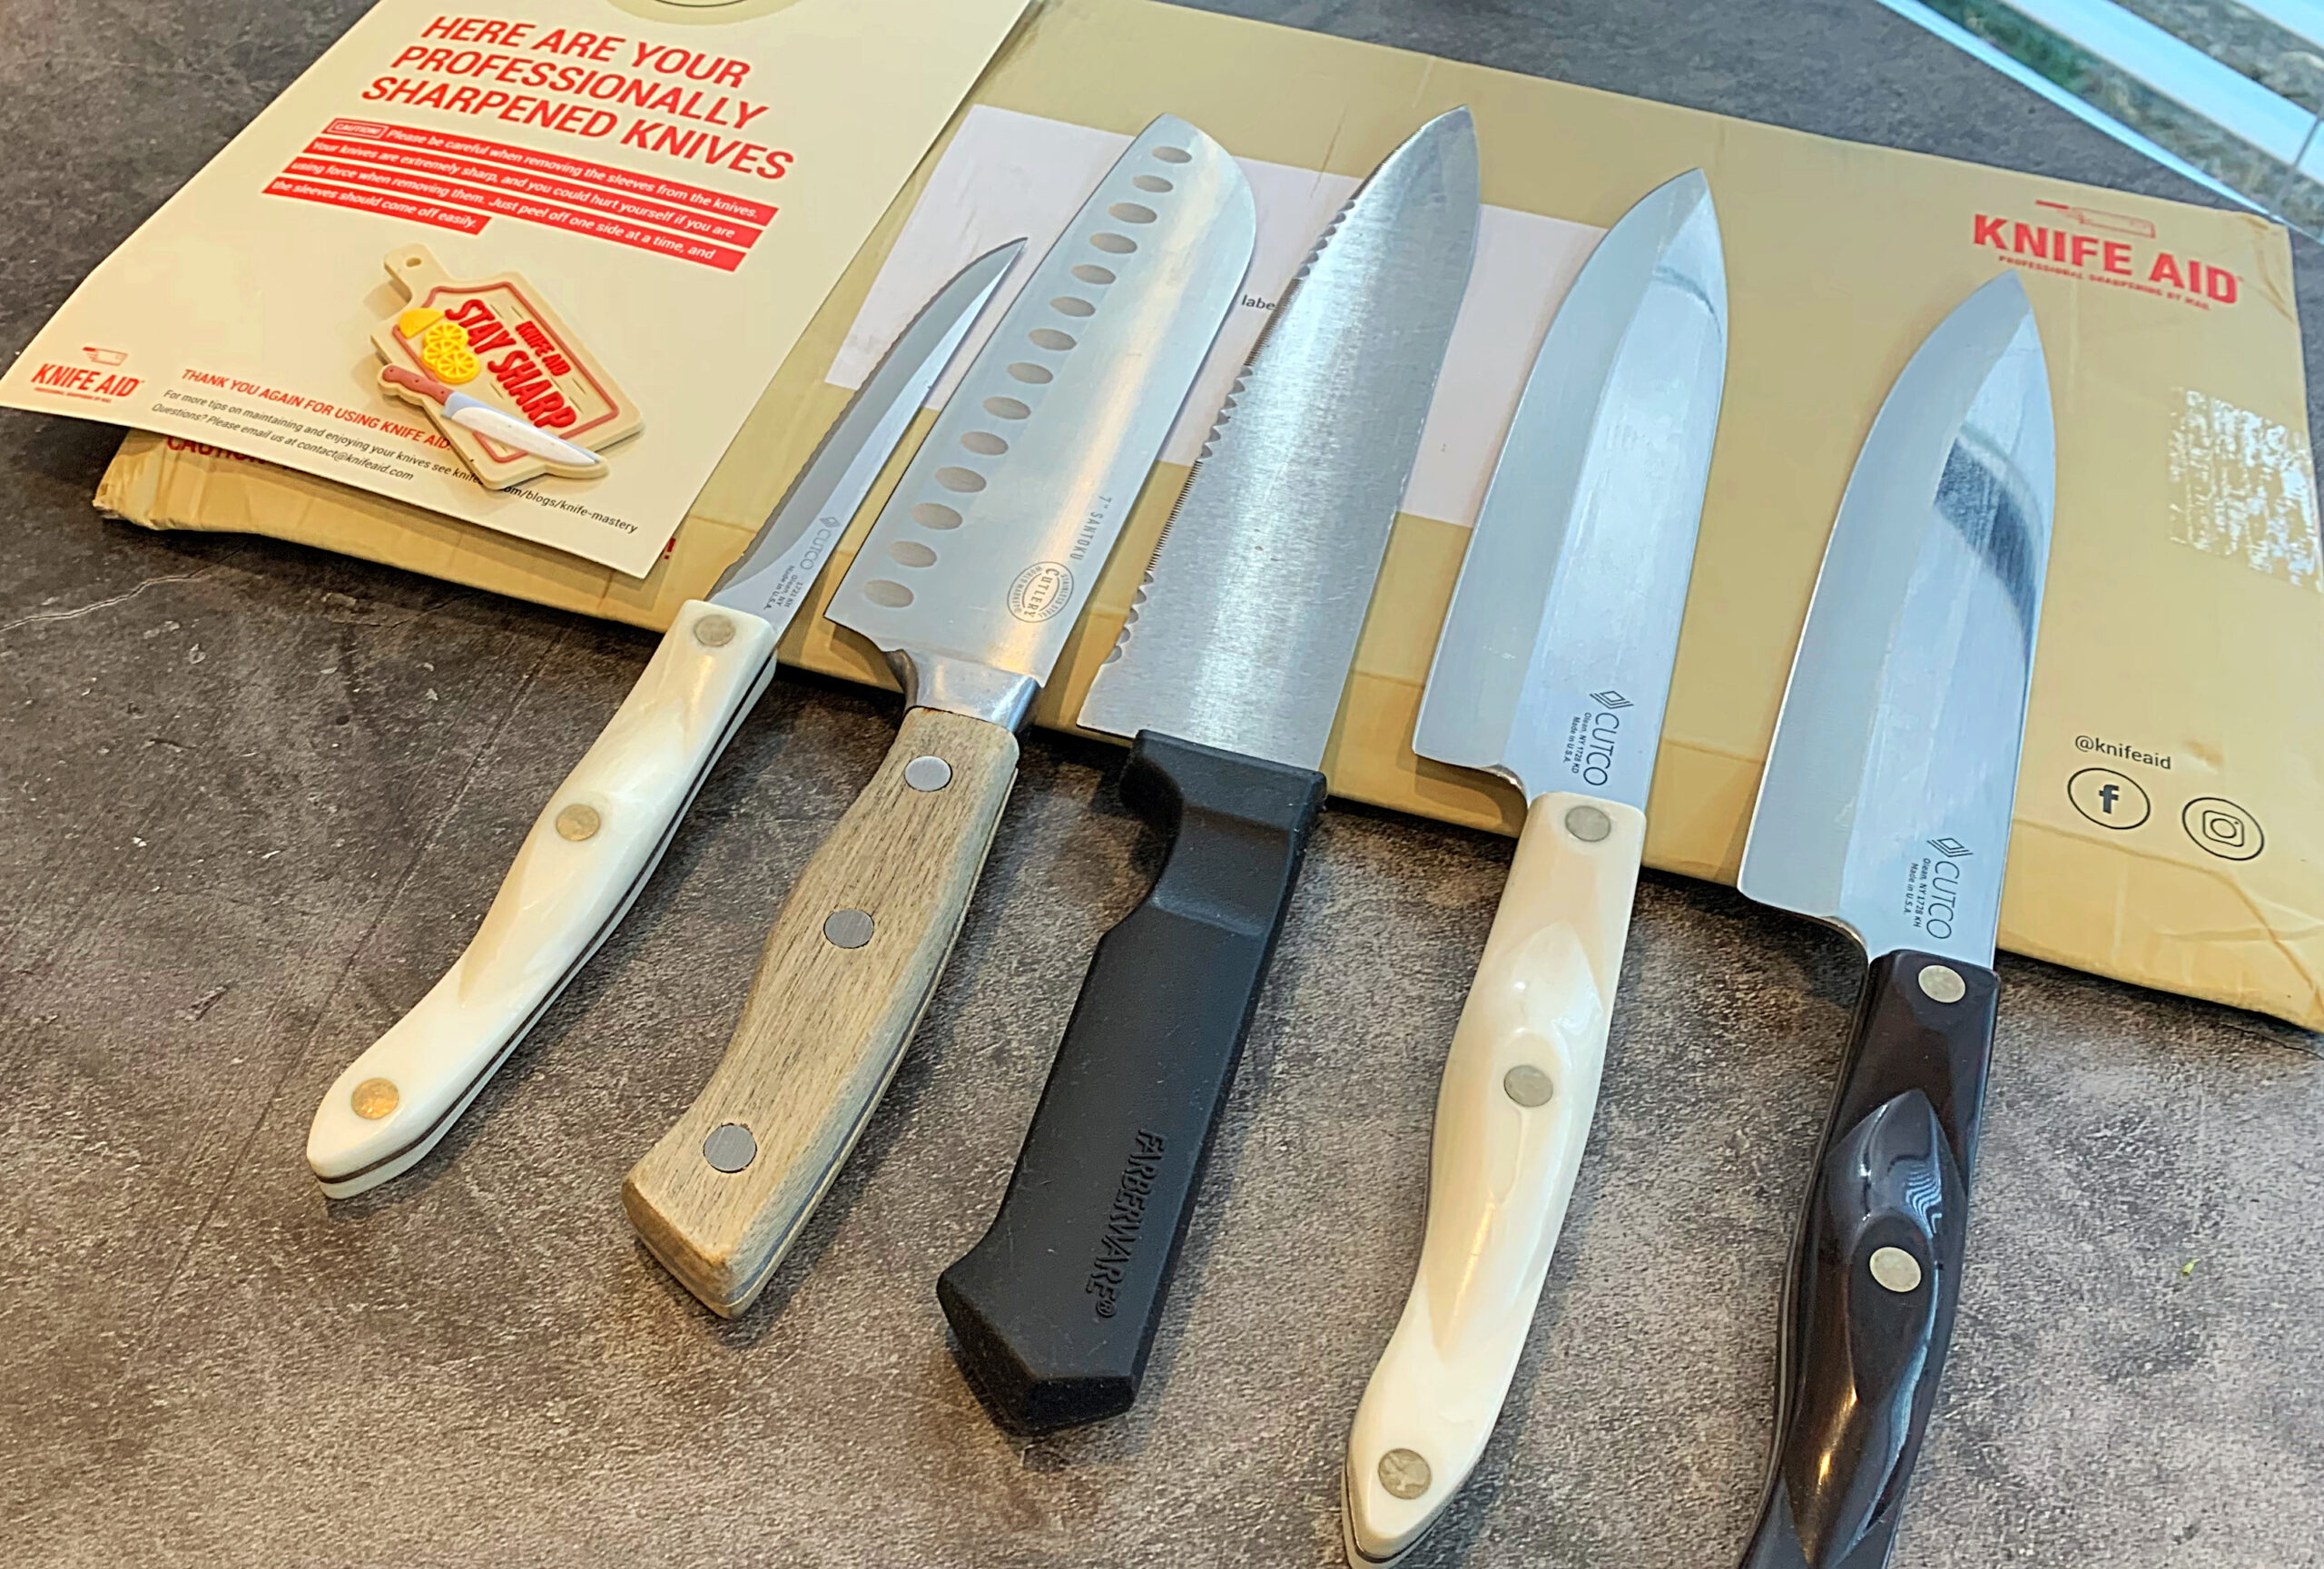 Kamikoto New Knives - DA' STYLISH FOODIE